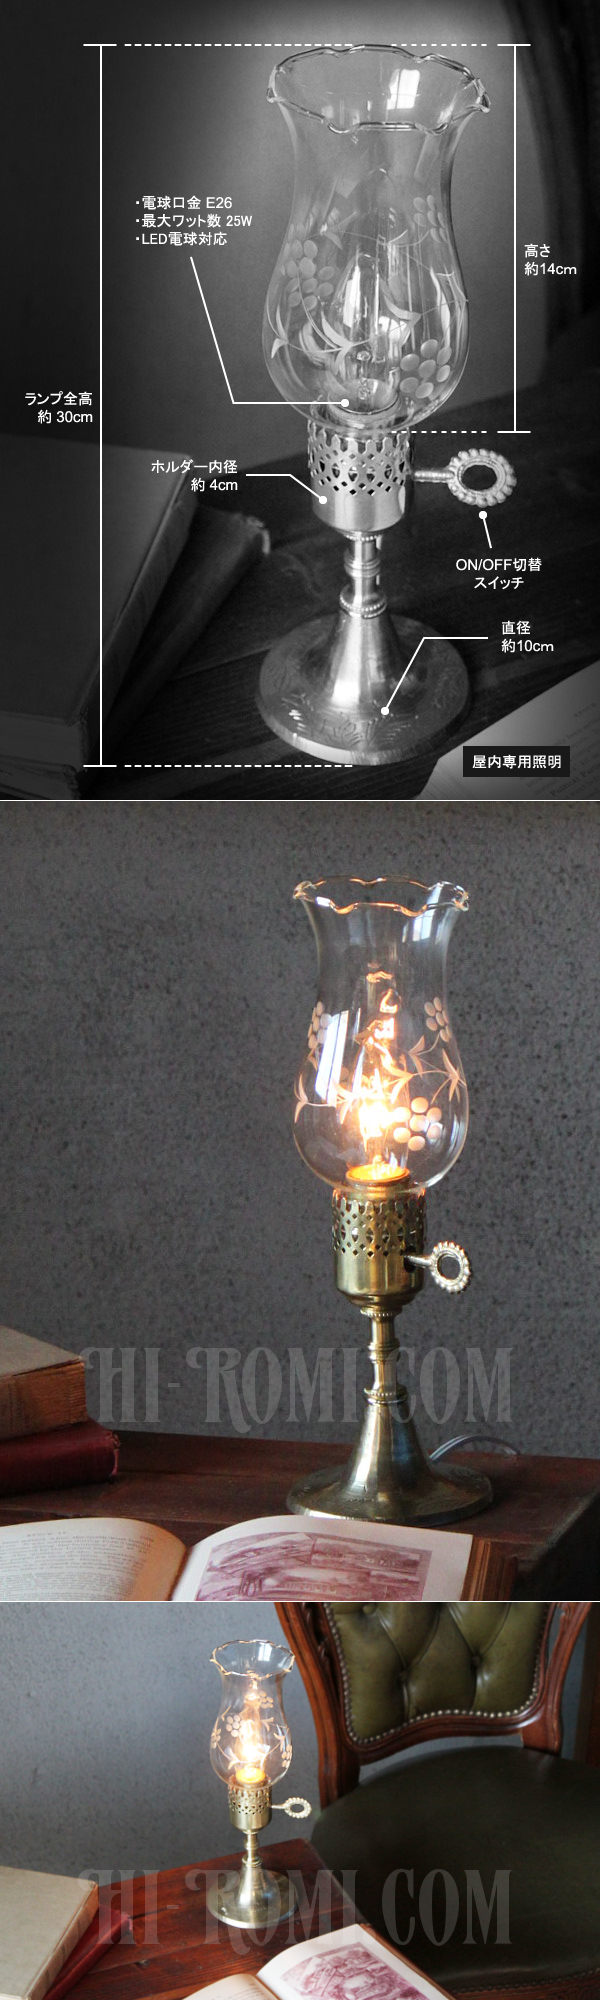 ヴィンテージホブネイル真鍮製鍵スイッチ付きガラス製フリルチムニーのテーブルランプ/アンティークハリケーンライト真鍮照明